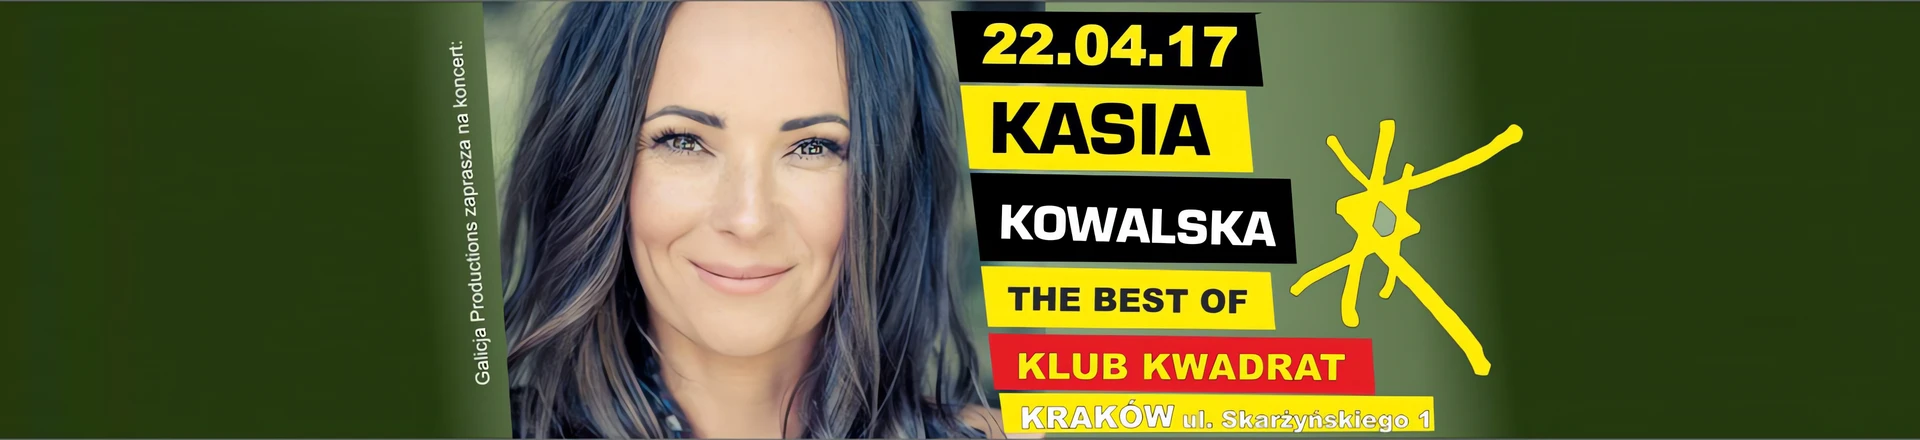 Kasia Kowalska w Krakowie (relacja)